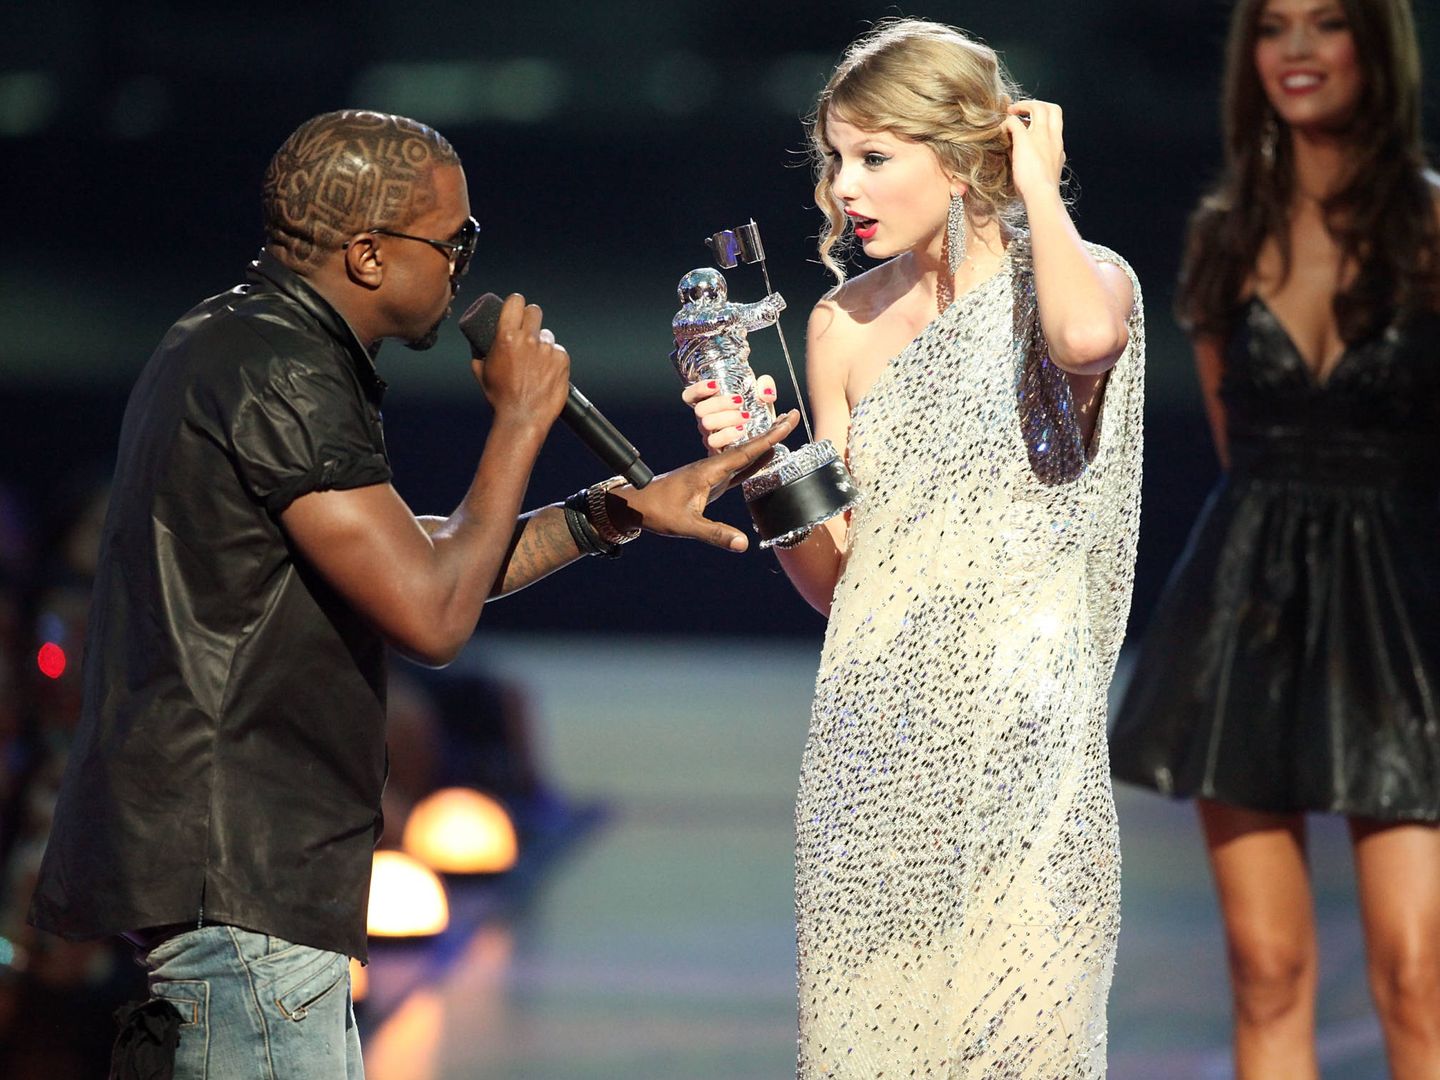  El polémico momento entre Kanye y Taylor. (Getty)